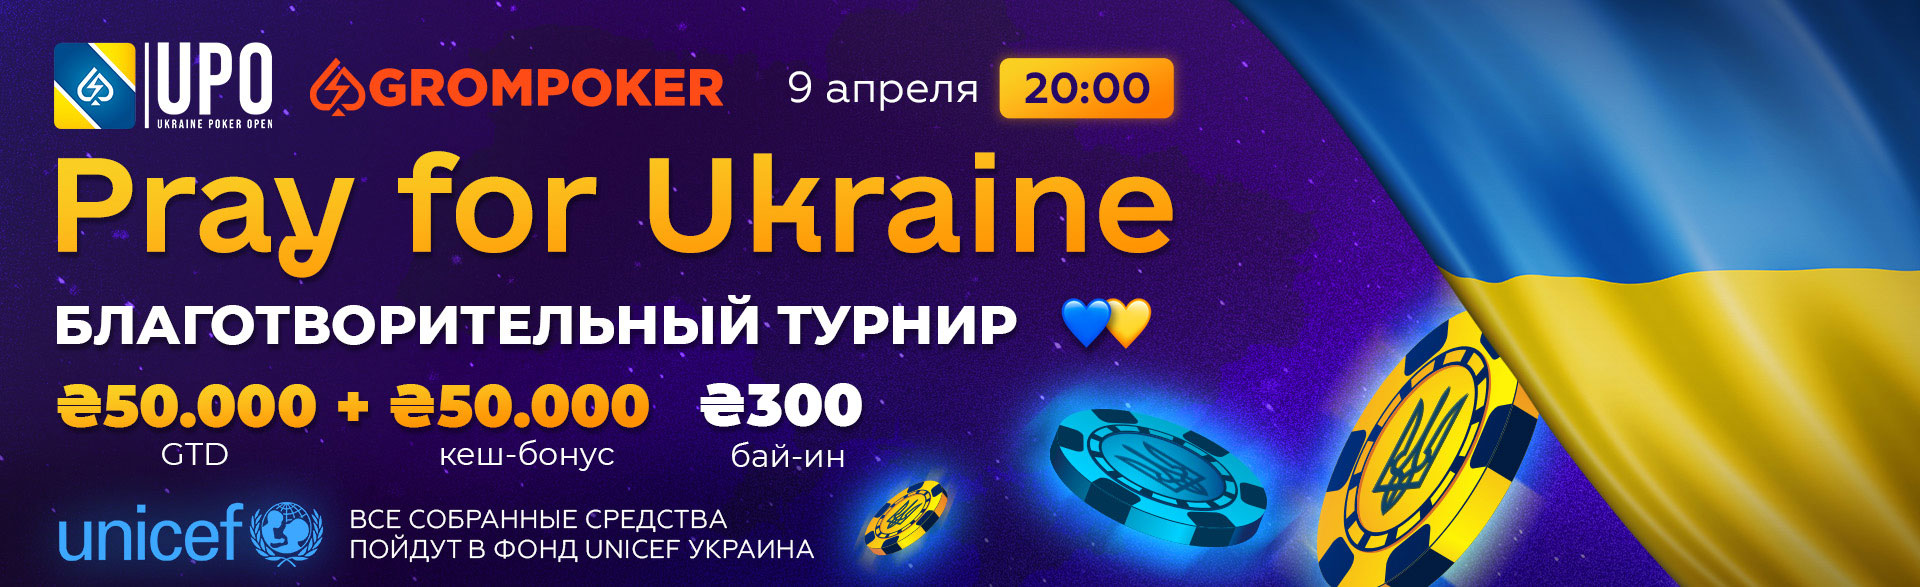 Благотворительный турнир Pray For Ukraine